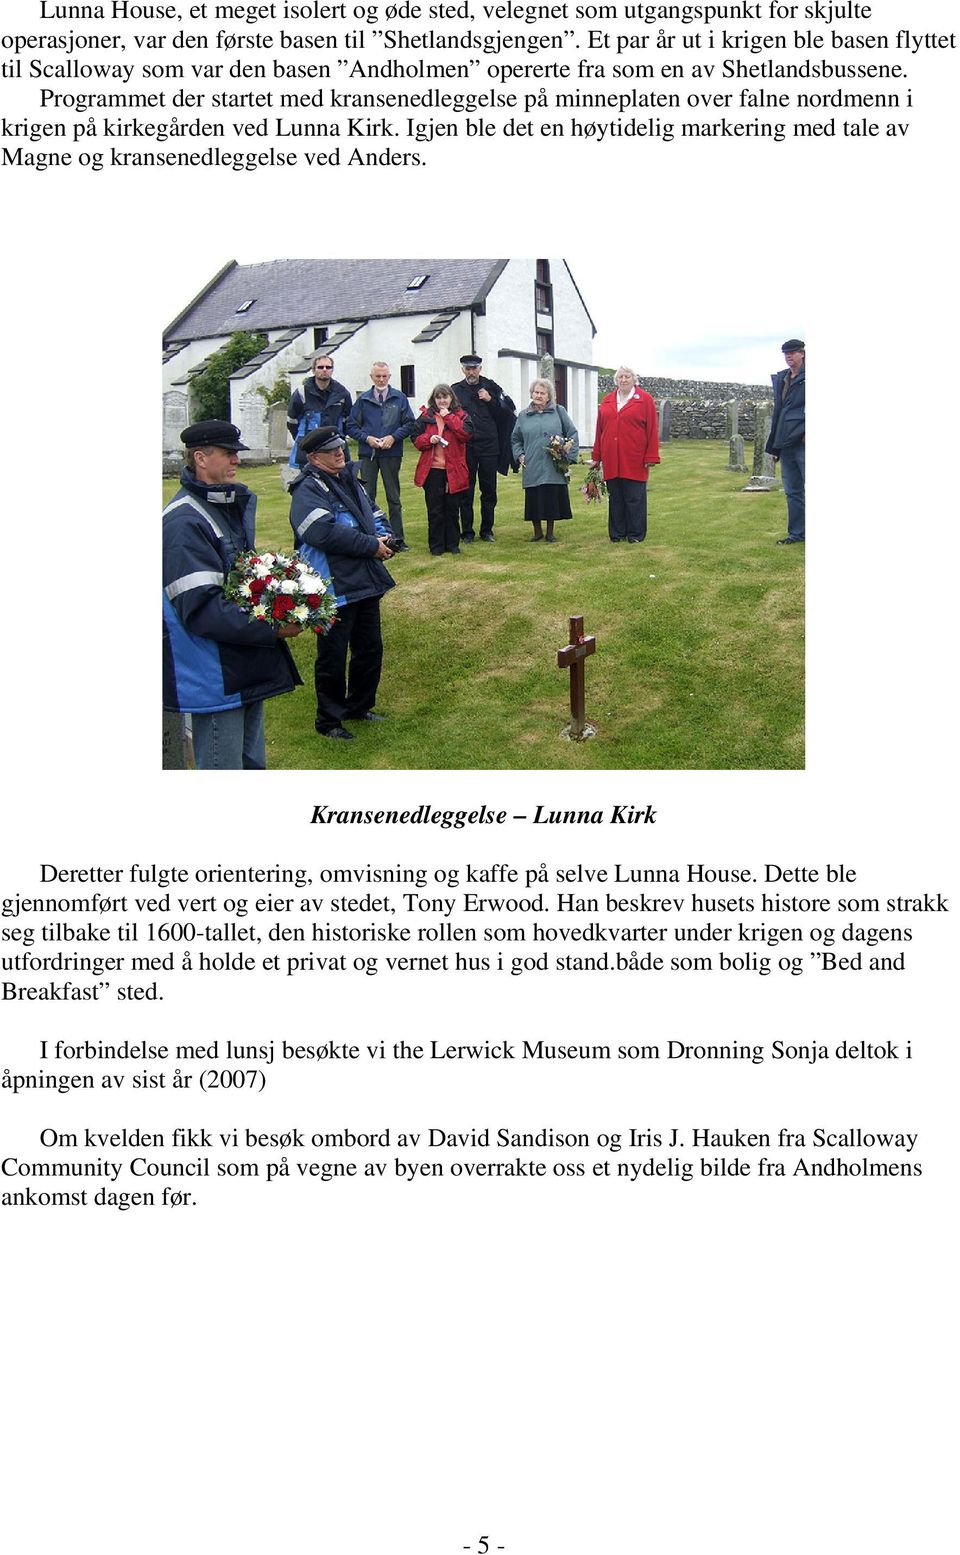 Programmet der startet med kransenedleggelse på minneplaten over falne nordmenn i krigen på kirkegården ved Lunna Kirk.